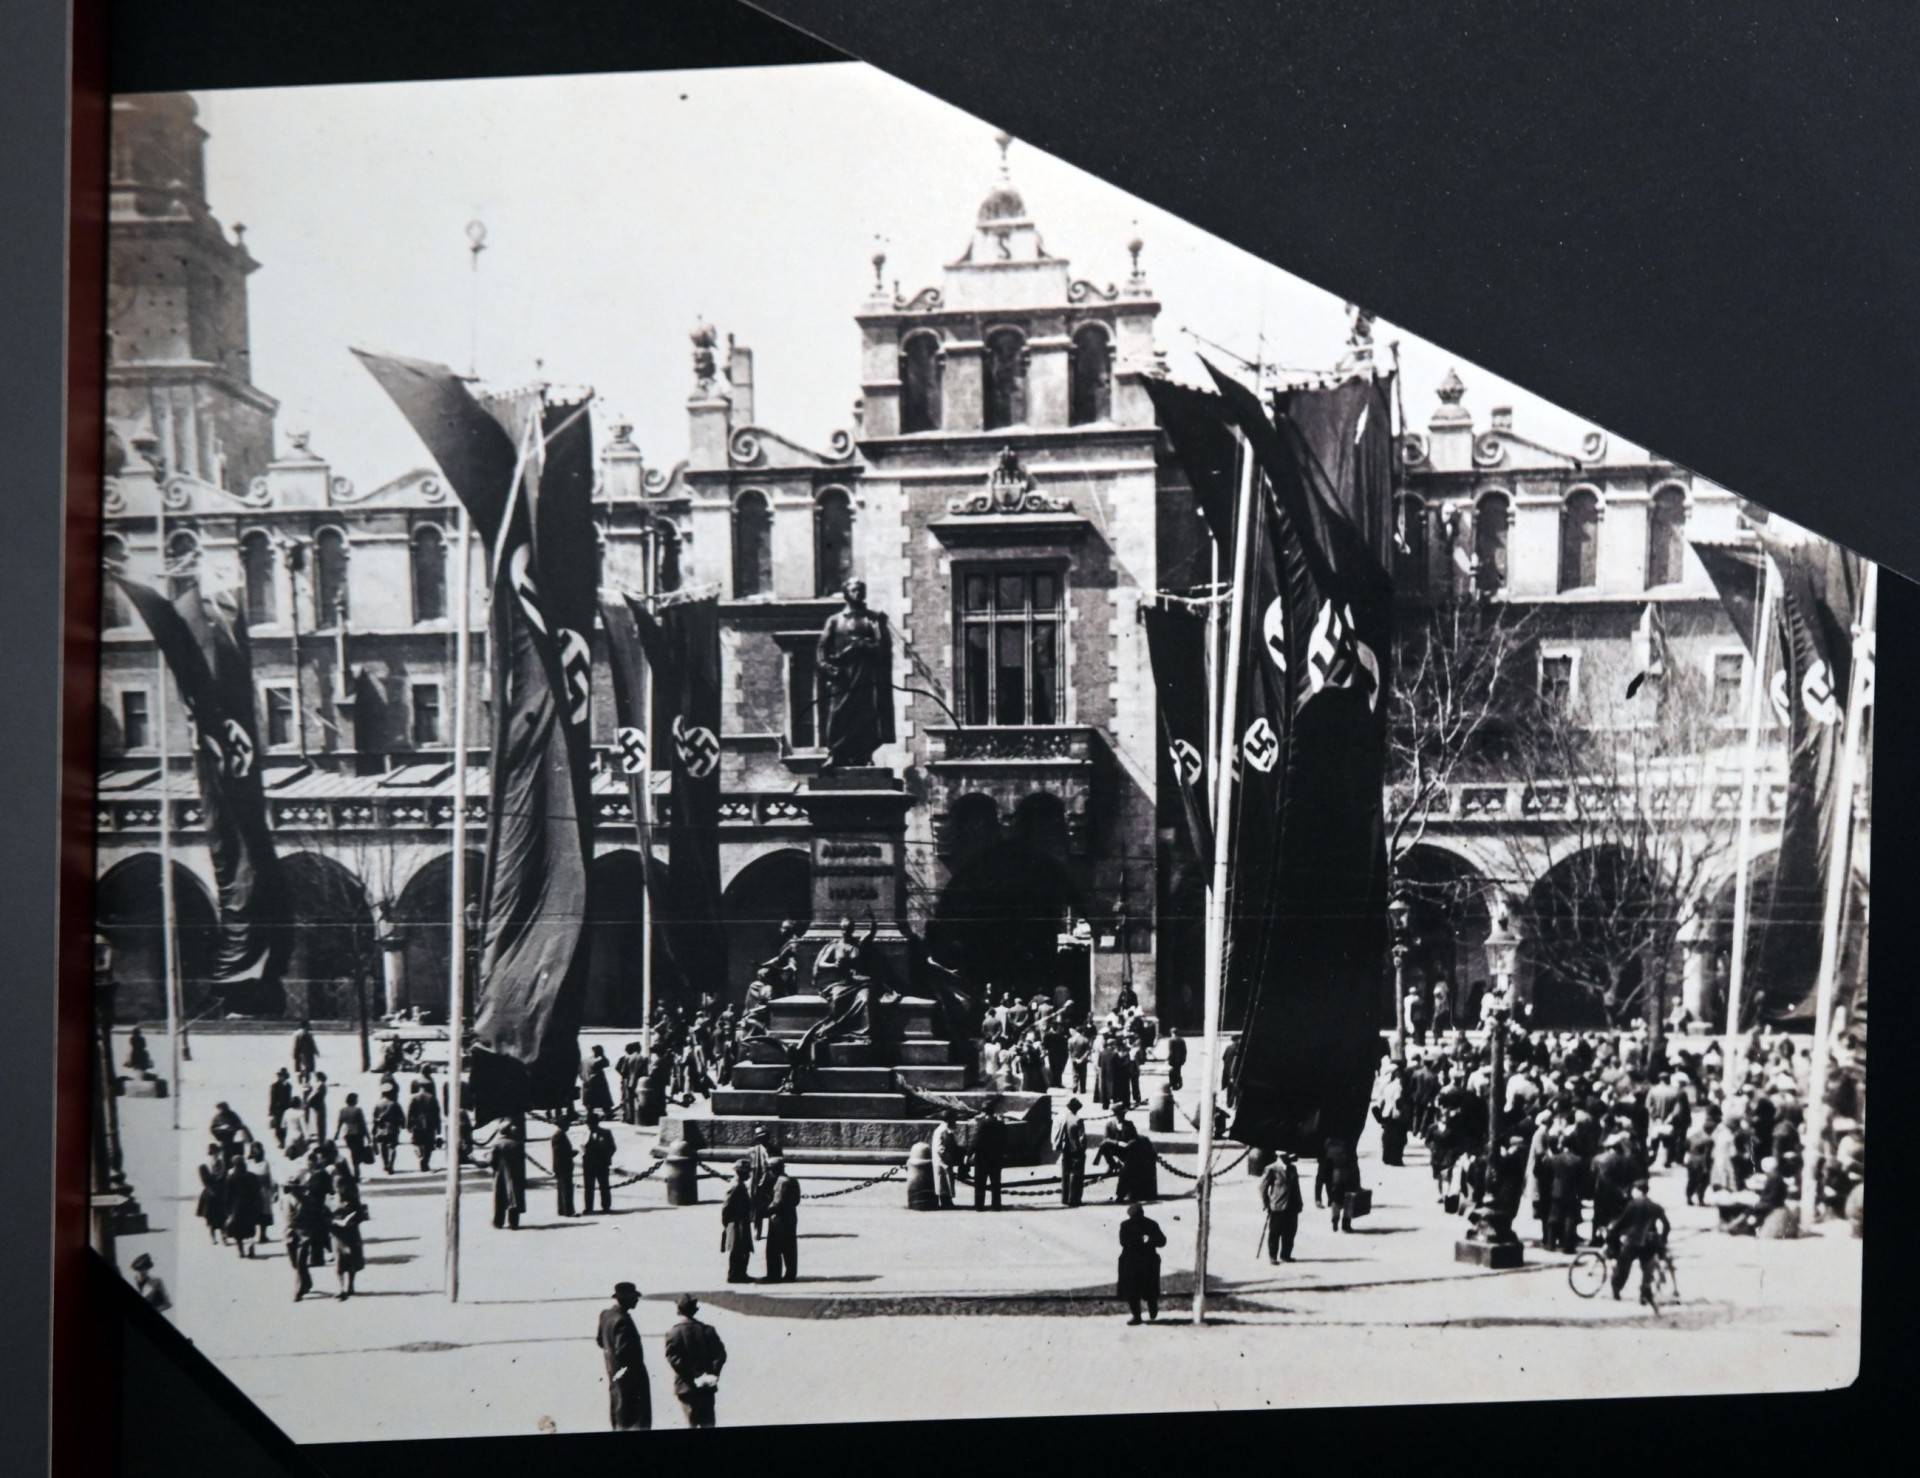 Od 1910 roku dokumentował życie miasta, nowa wystawa w Muzeum Fotografii